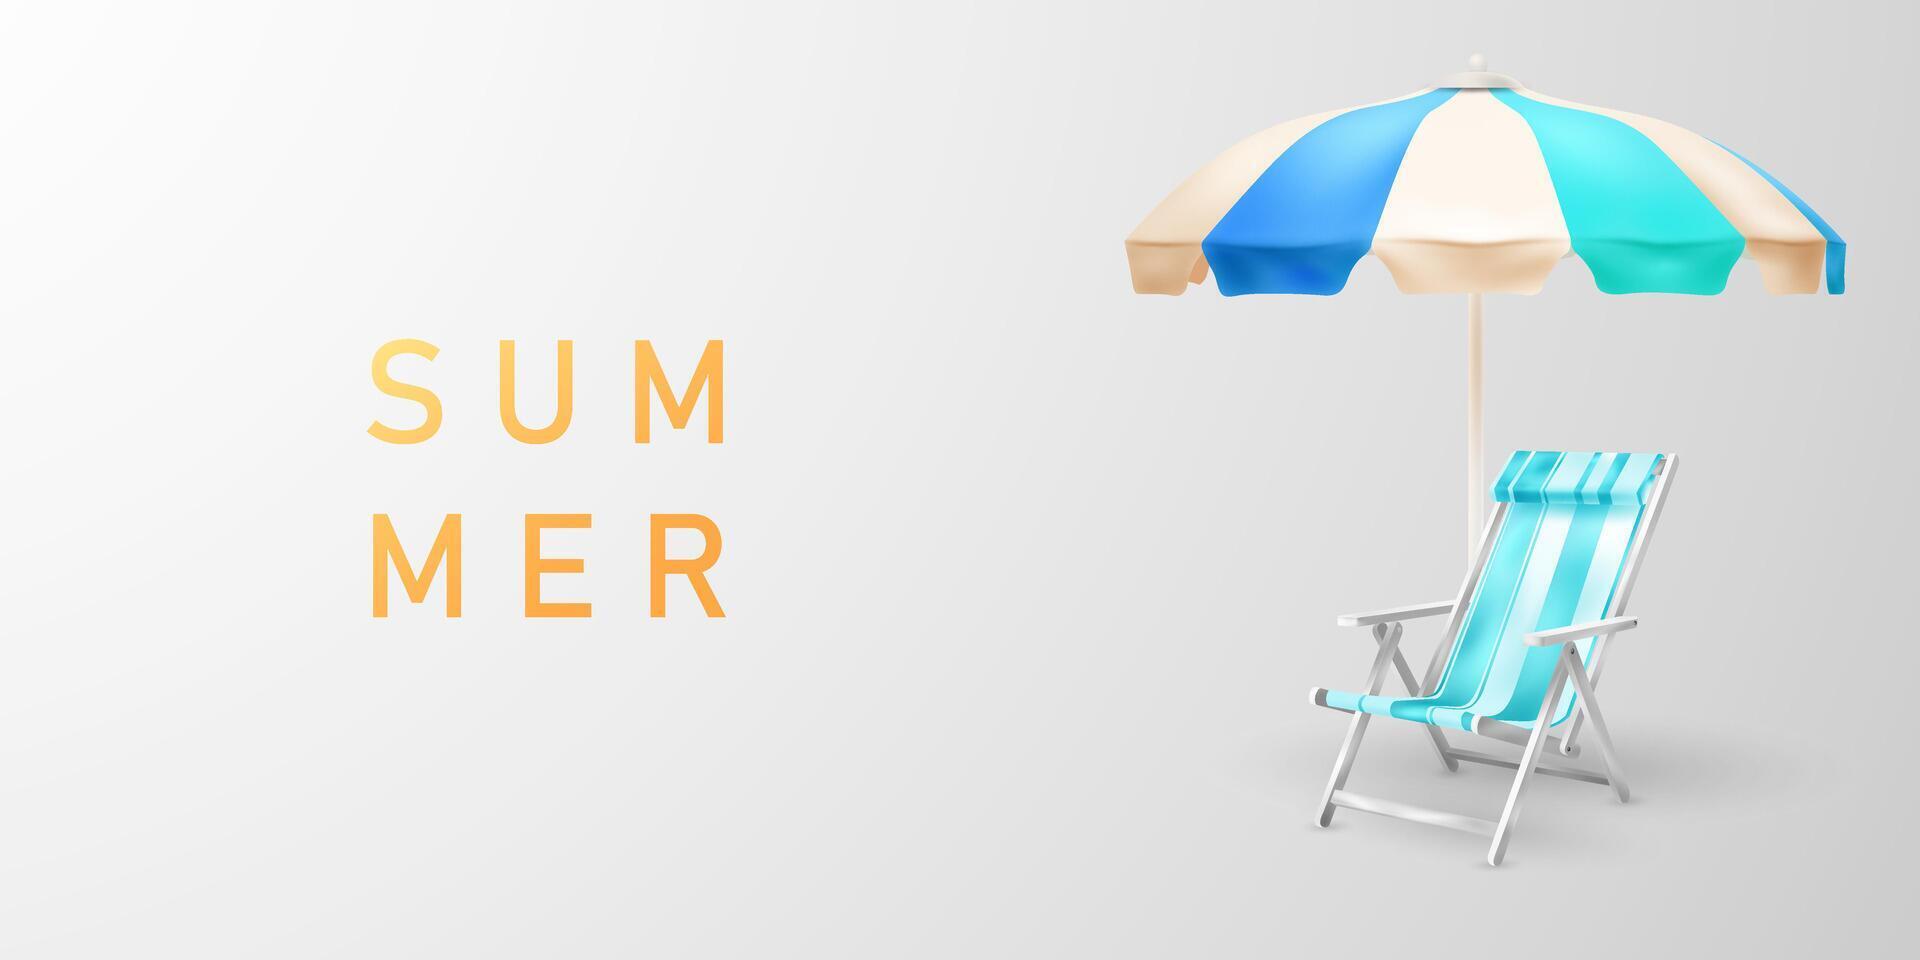 sommar bakgrund dekorerad med strand stolar och paraplyer, hav design begrepp vektor illustration